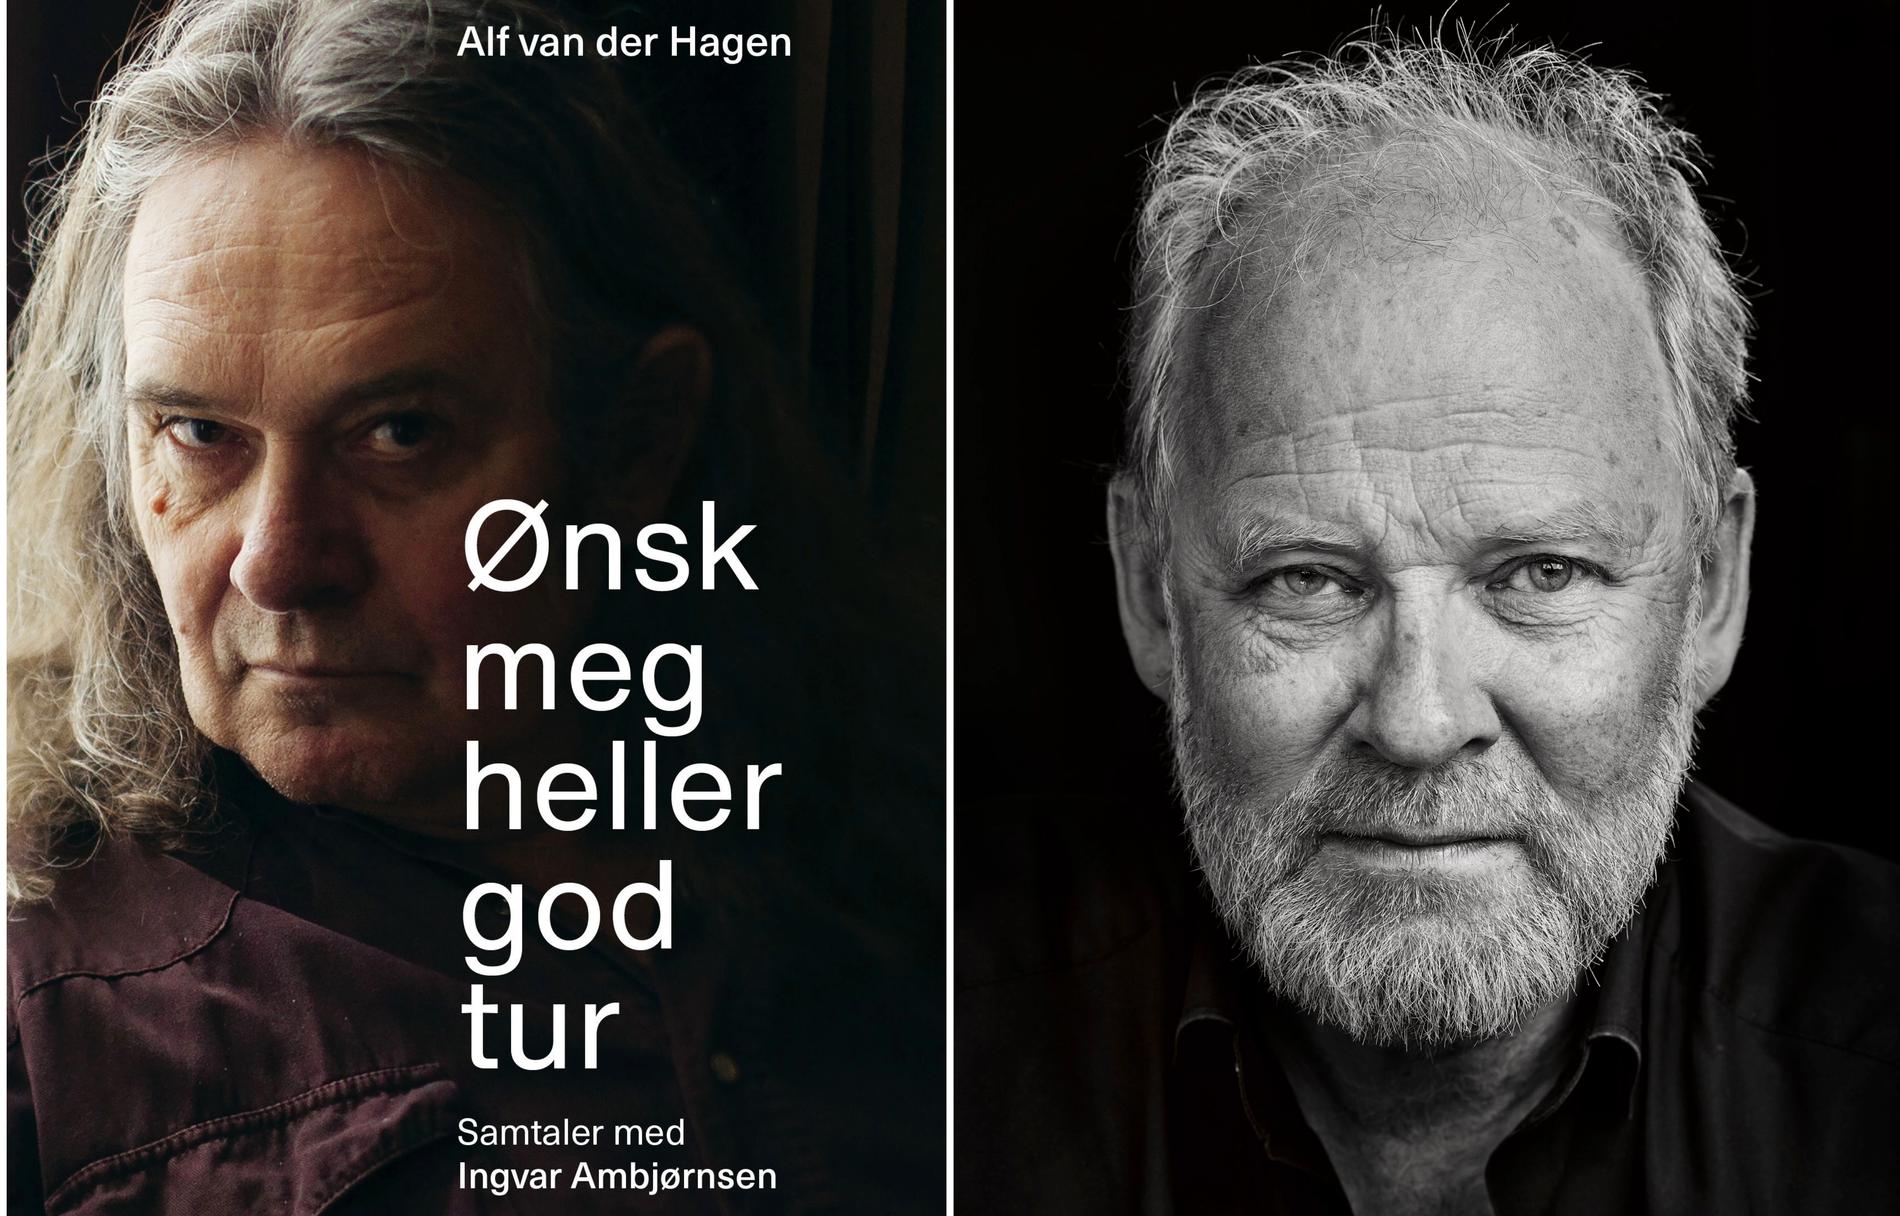 Il nuovo libro: Il libro della conversazione di Alf van der Hagen sarà pubblicato venerdì di questa settimana.